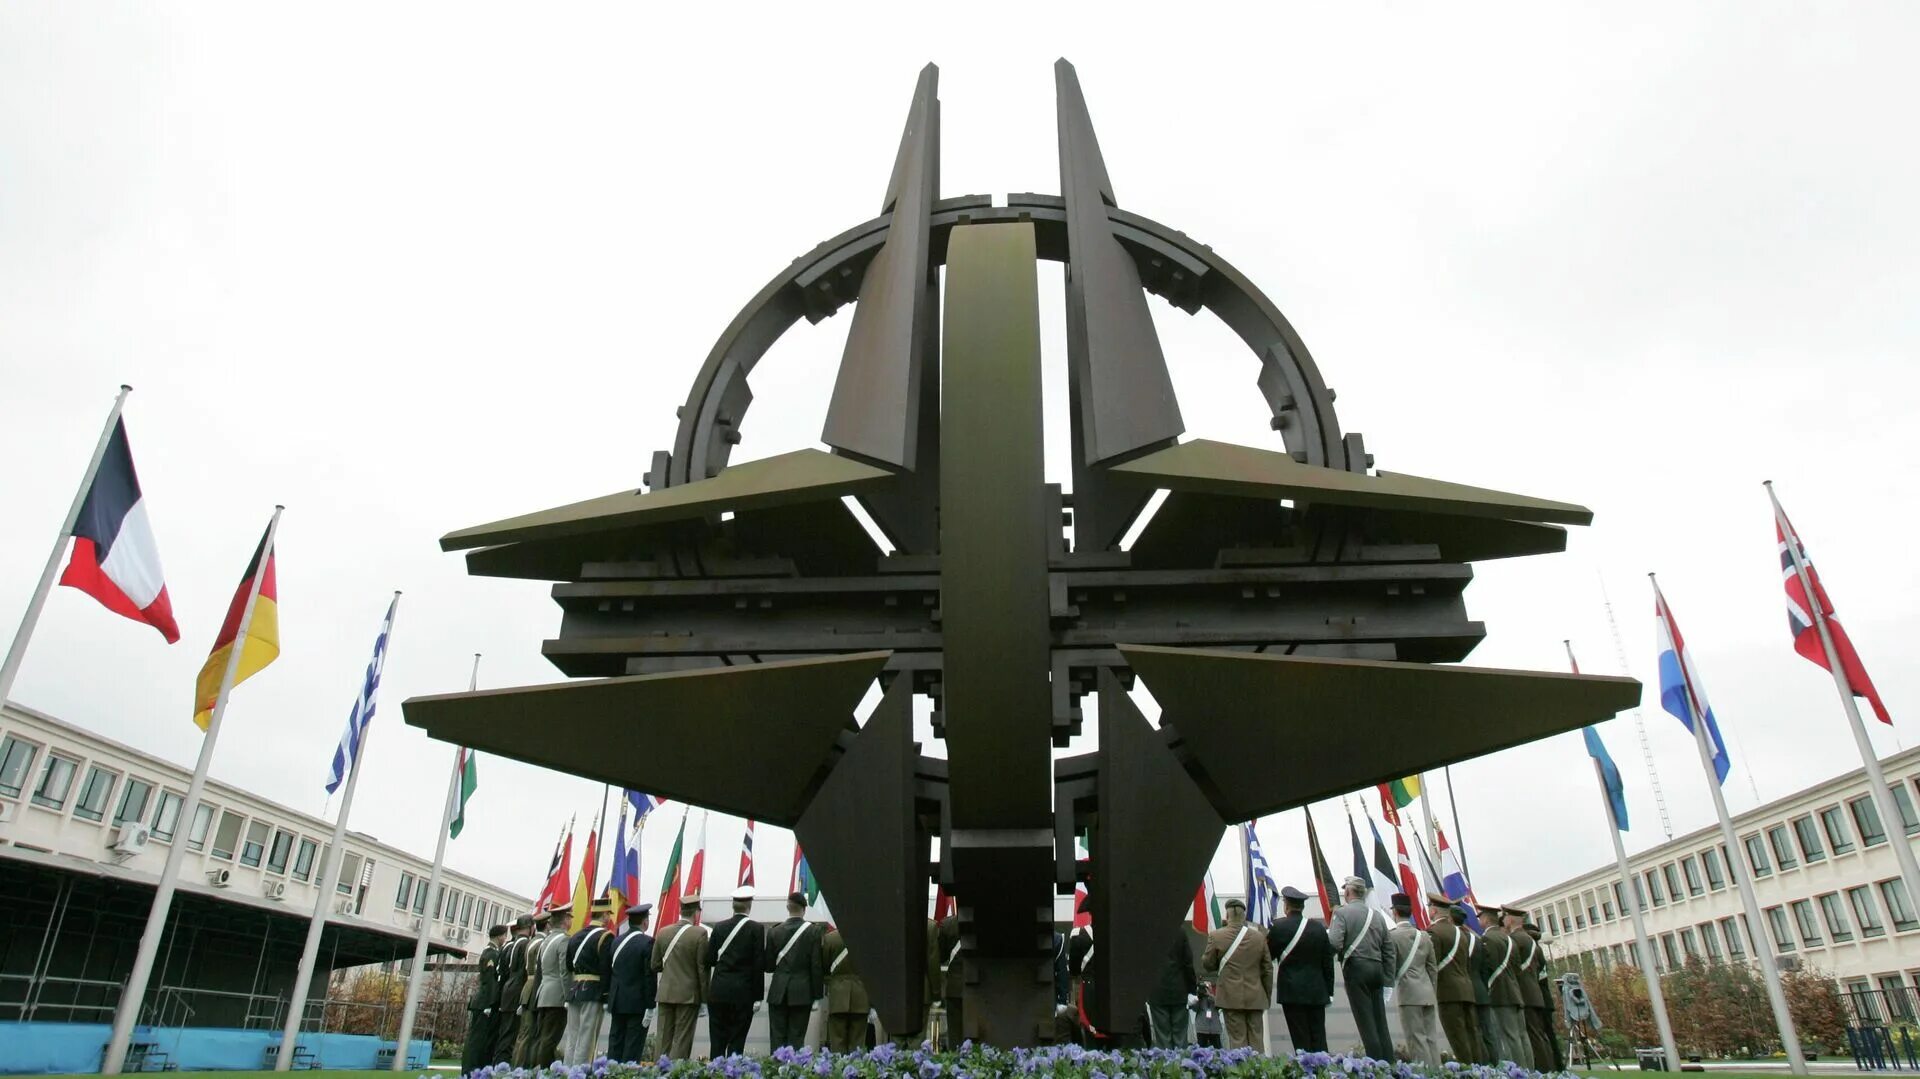 300000 нато. Штаб-квартира НАТО В Брюсселе. Памятник НАТО В Брюсселе. Штаб НАТО В Брюсселе. Международный военный штаб (МВШ) НАТО.